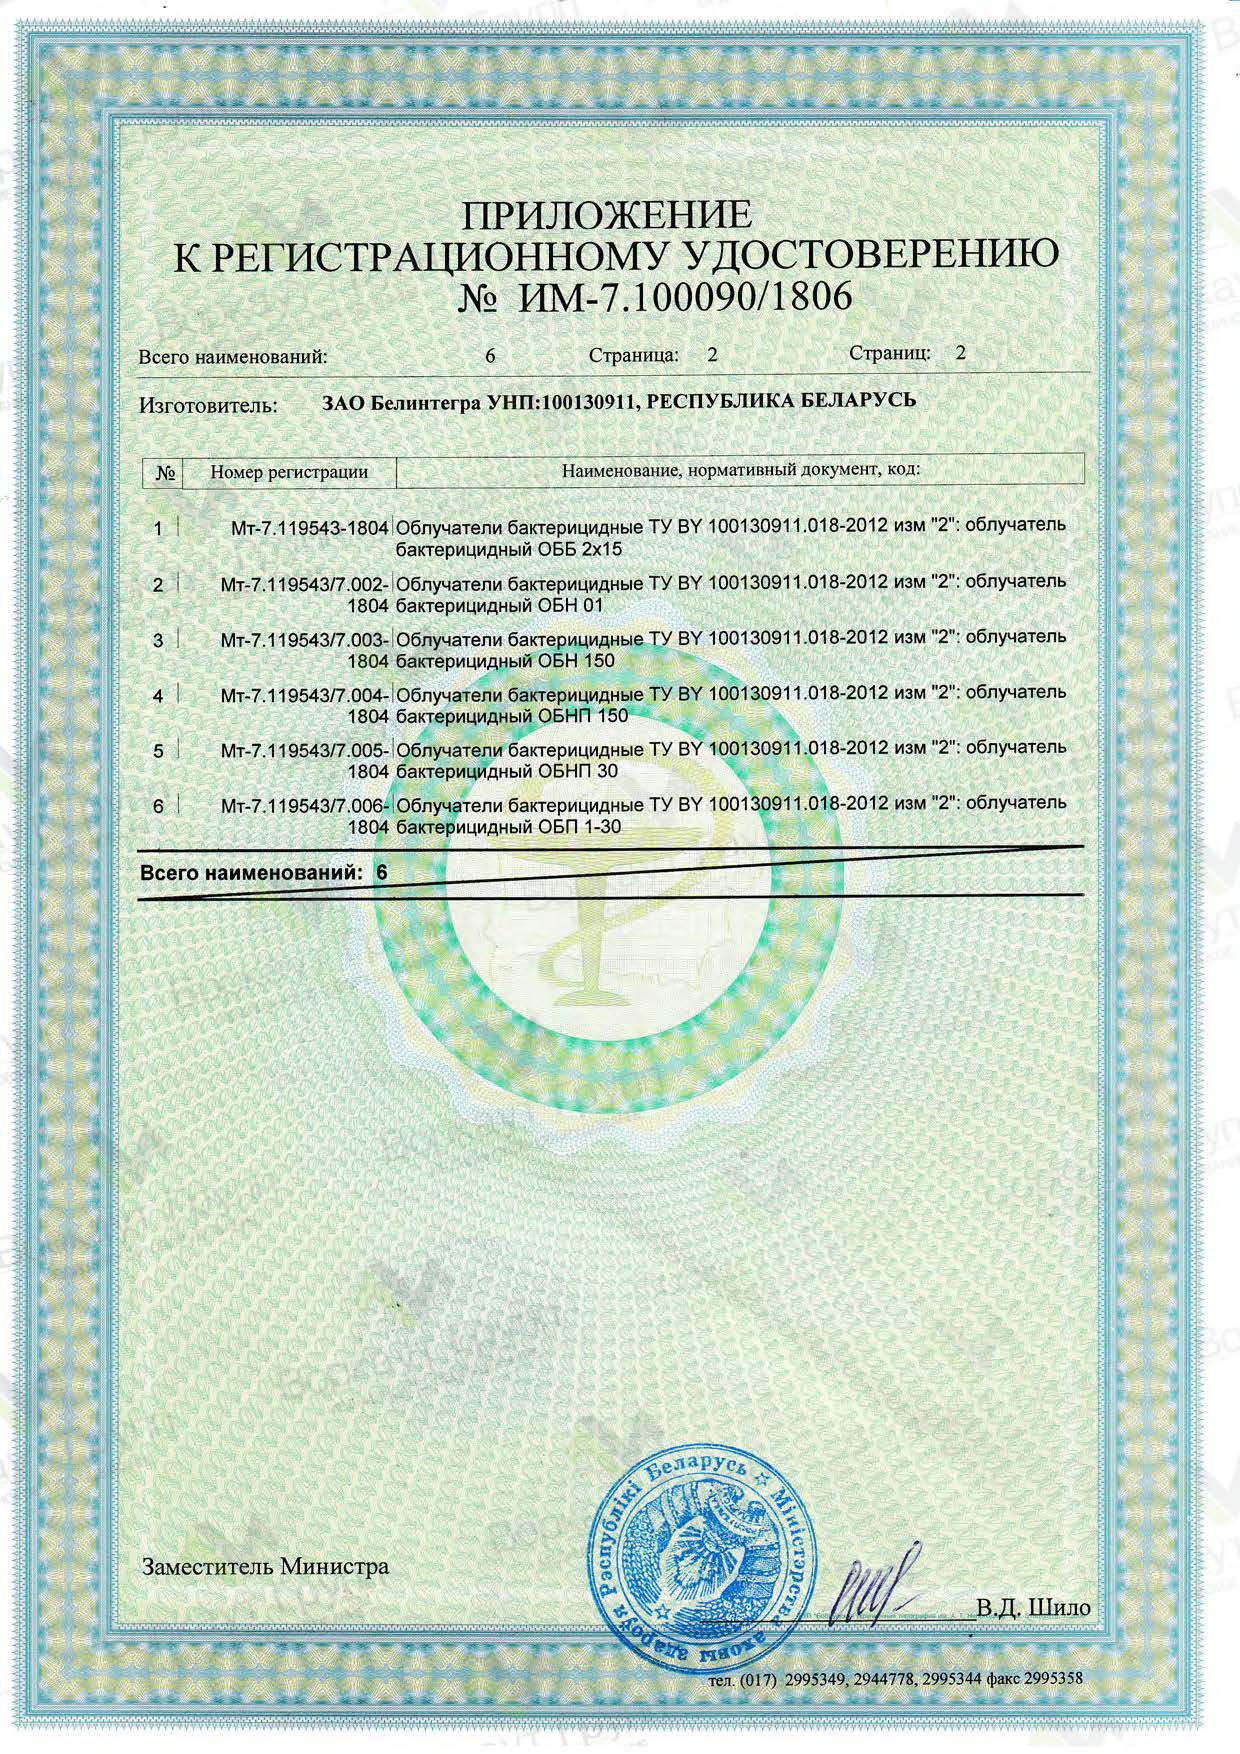 Регистрационное удостоверение Облучателя "ОБНП-15" (приложение)